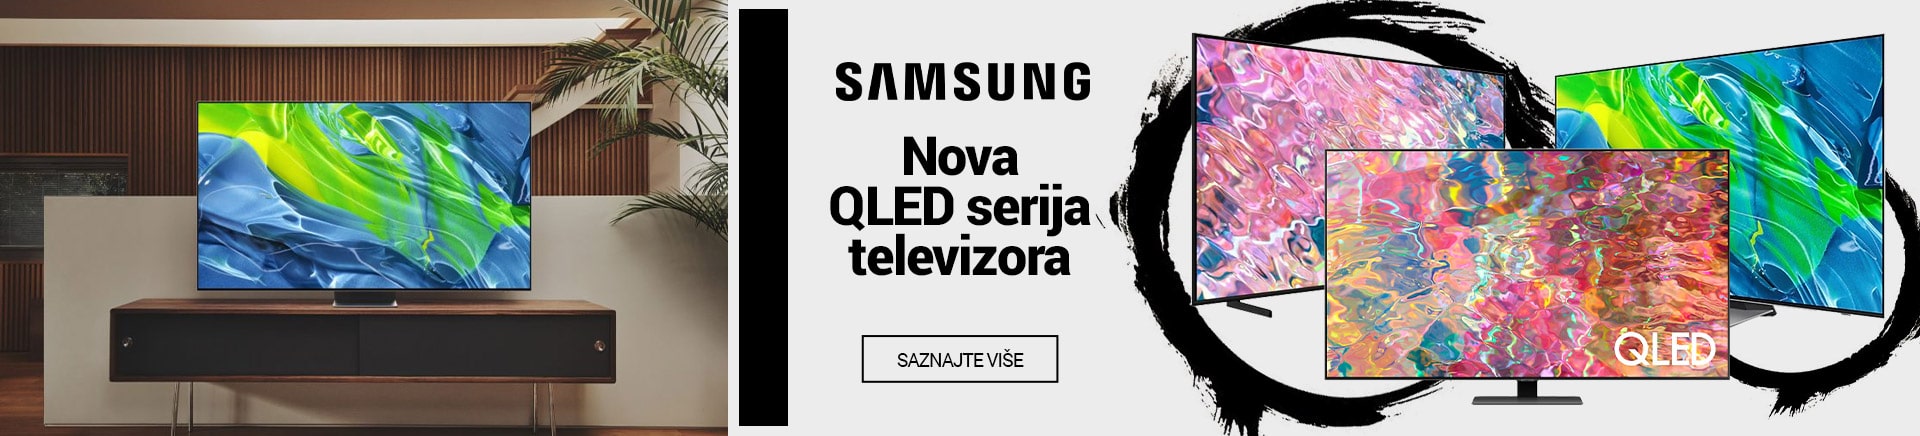 Samsung nova QLED serija televizora